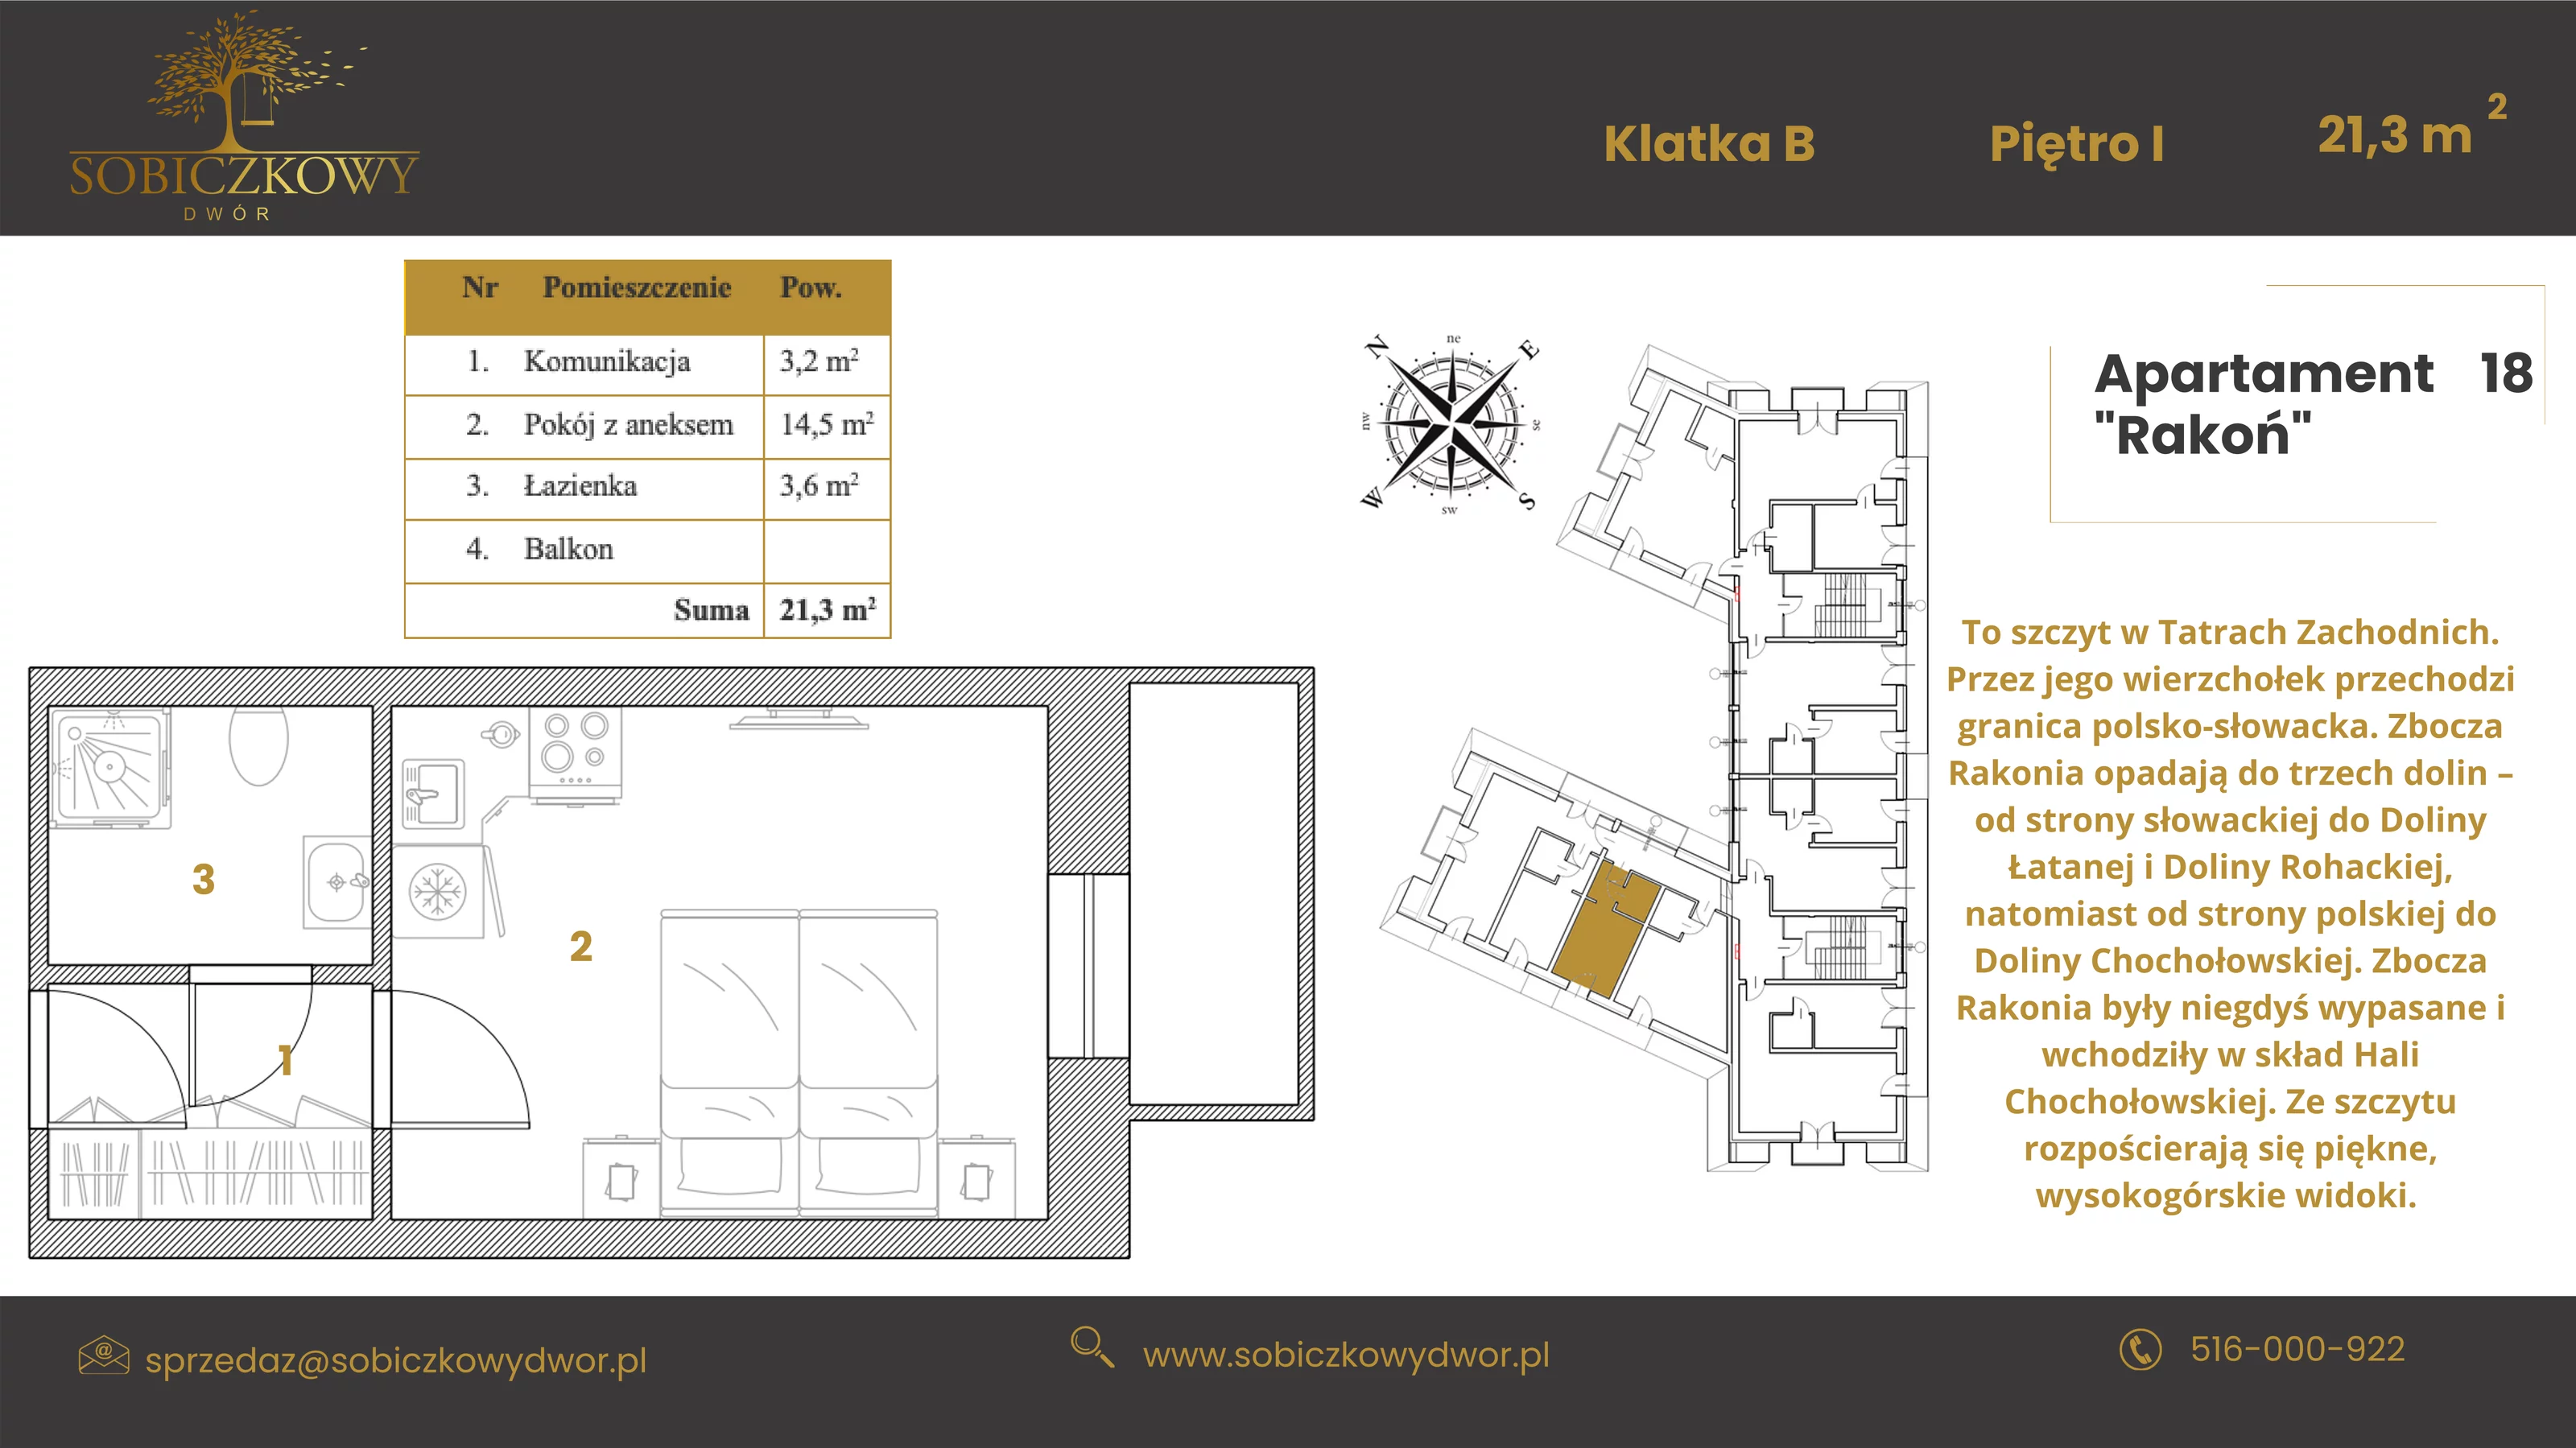 Apartament 21,10 m², piętro 1, oferta nr 18 "Rakoń", Sobiczkowy Dwór, Kościelisko, ul. Sobiczkowa Bór 1